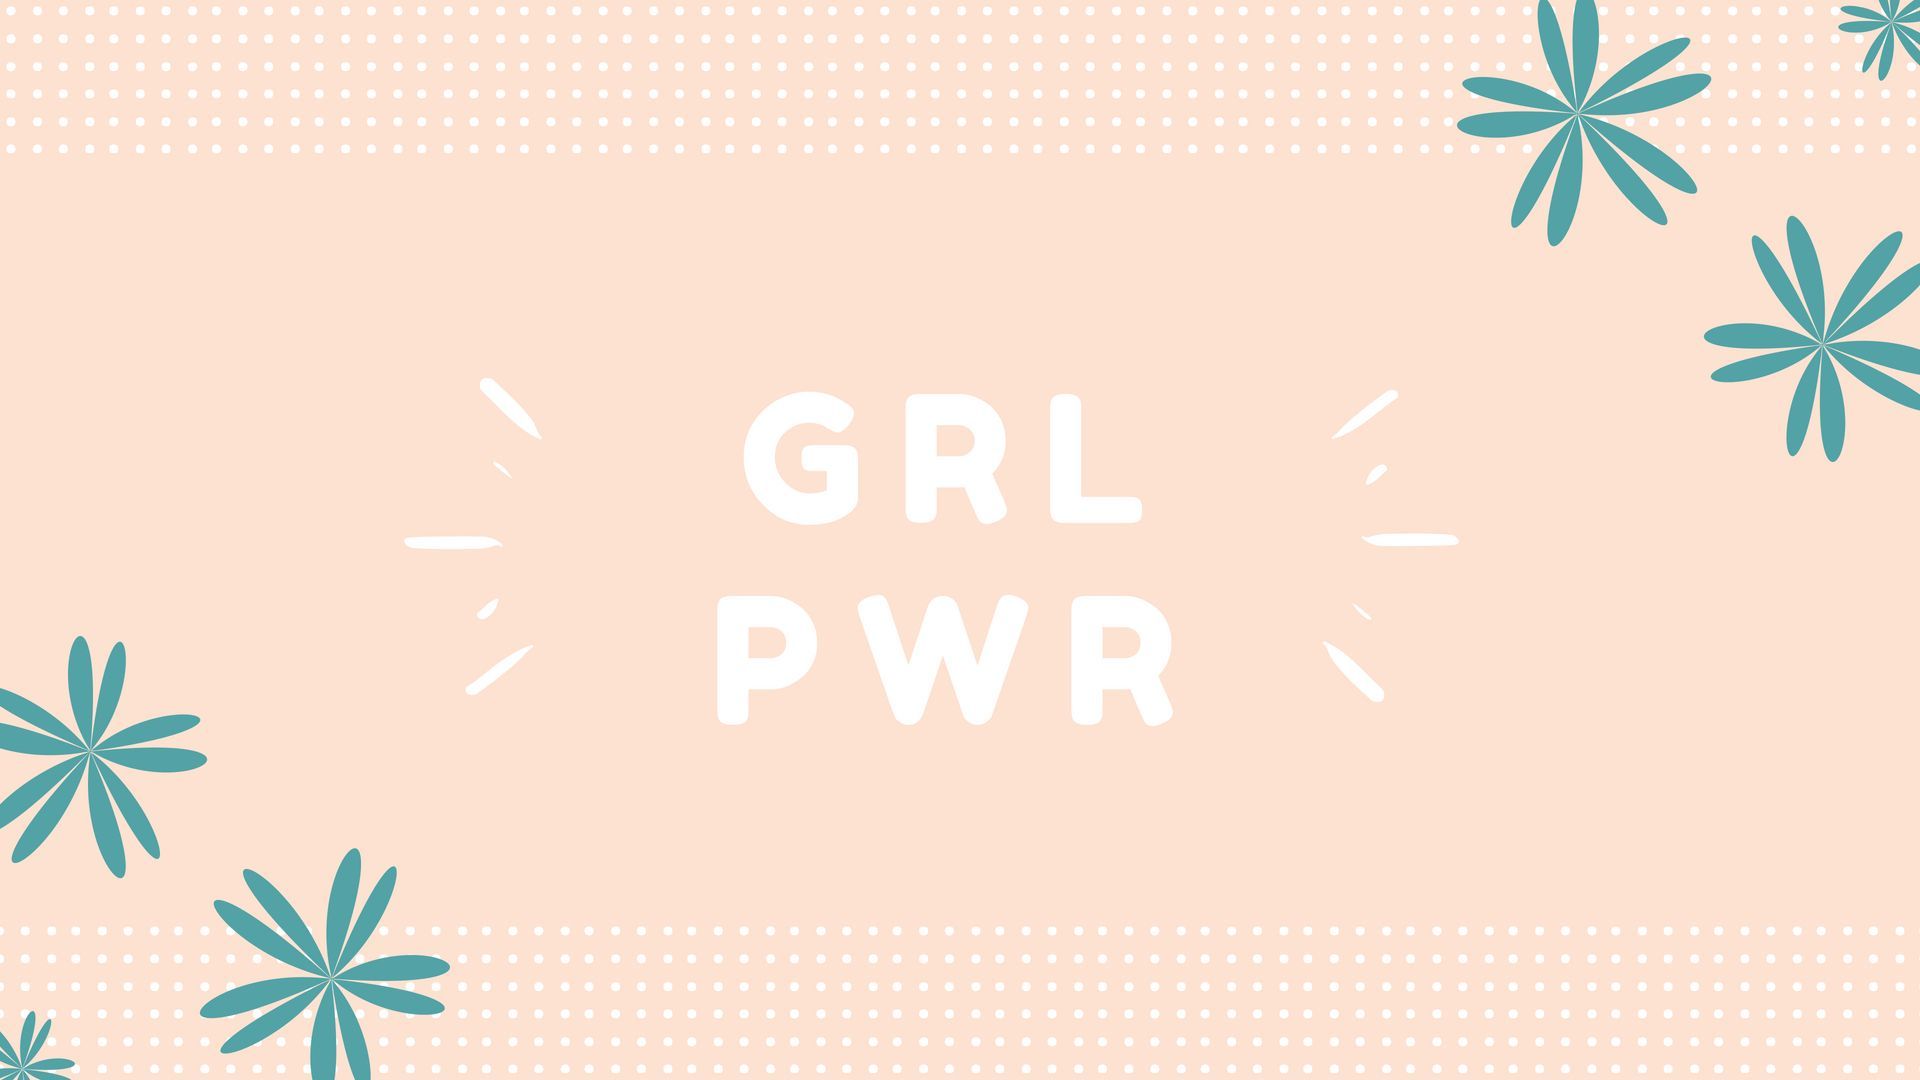 grl pwr (girl power) #pc #desktop #wallpaper #feminist. Fundos